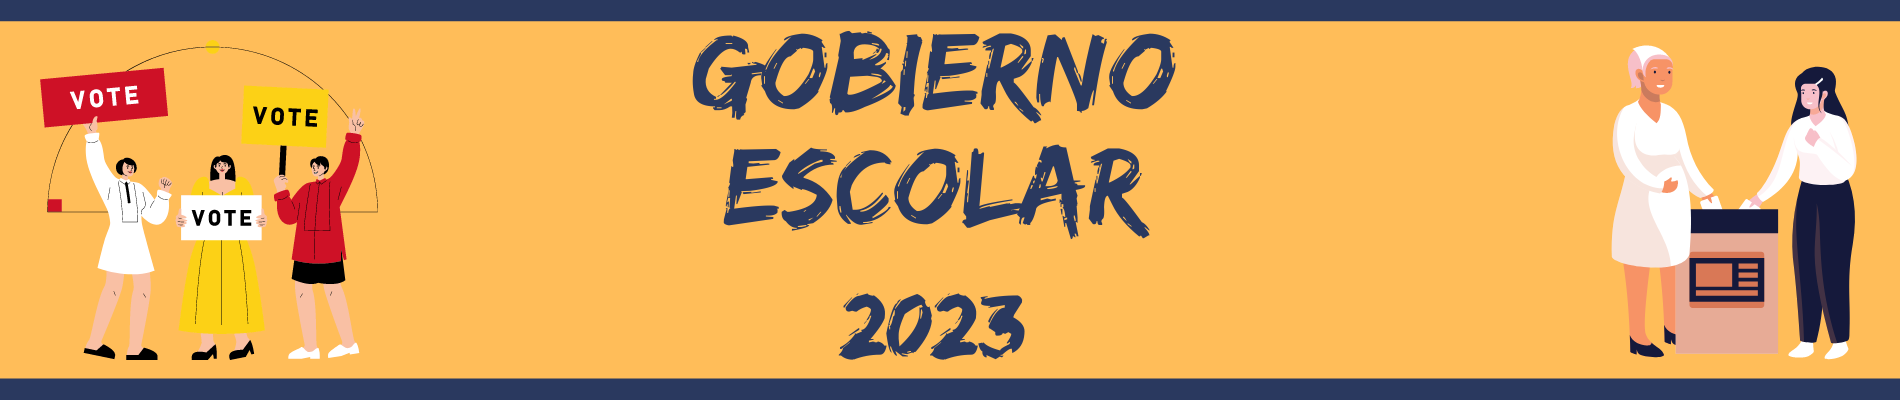 GOBIERNO ESCOLAR 2023